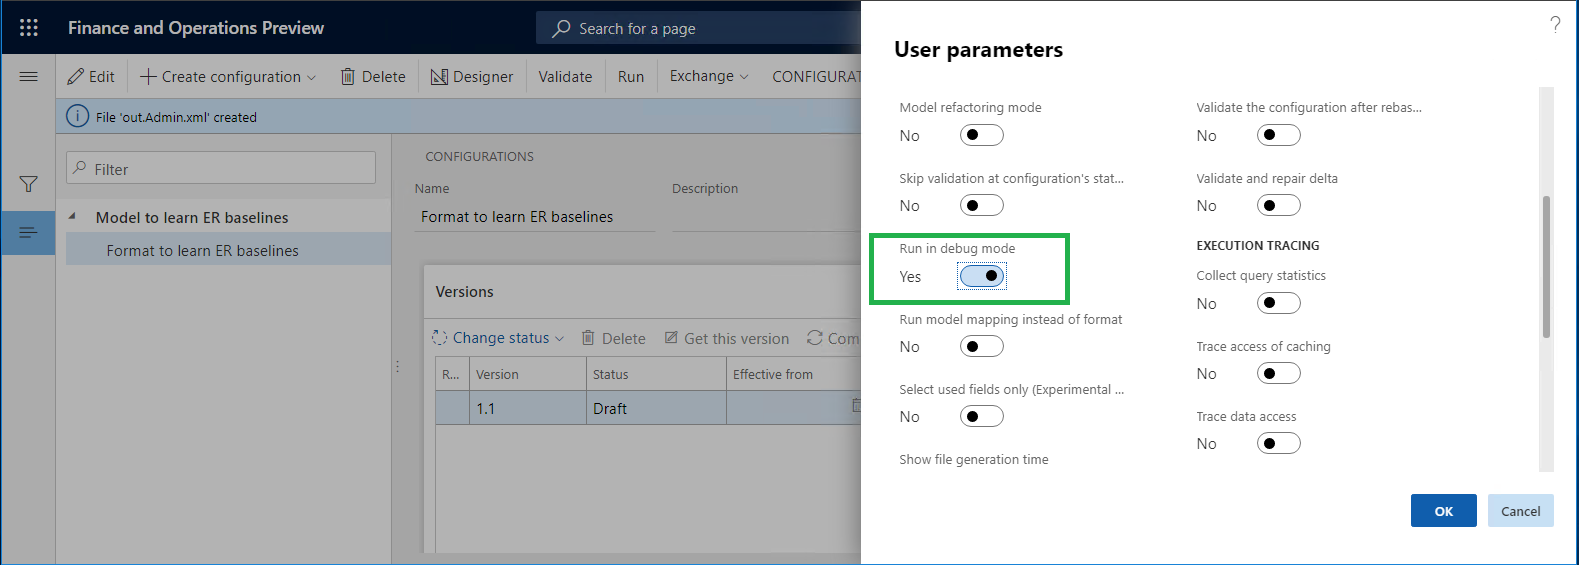 User parameters dialog box.